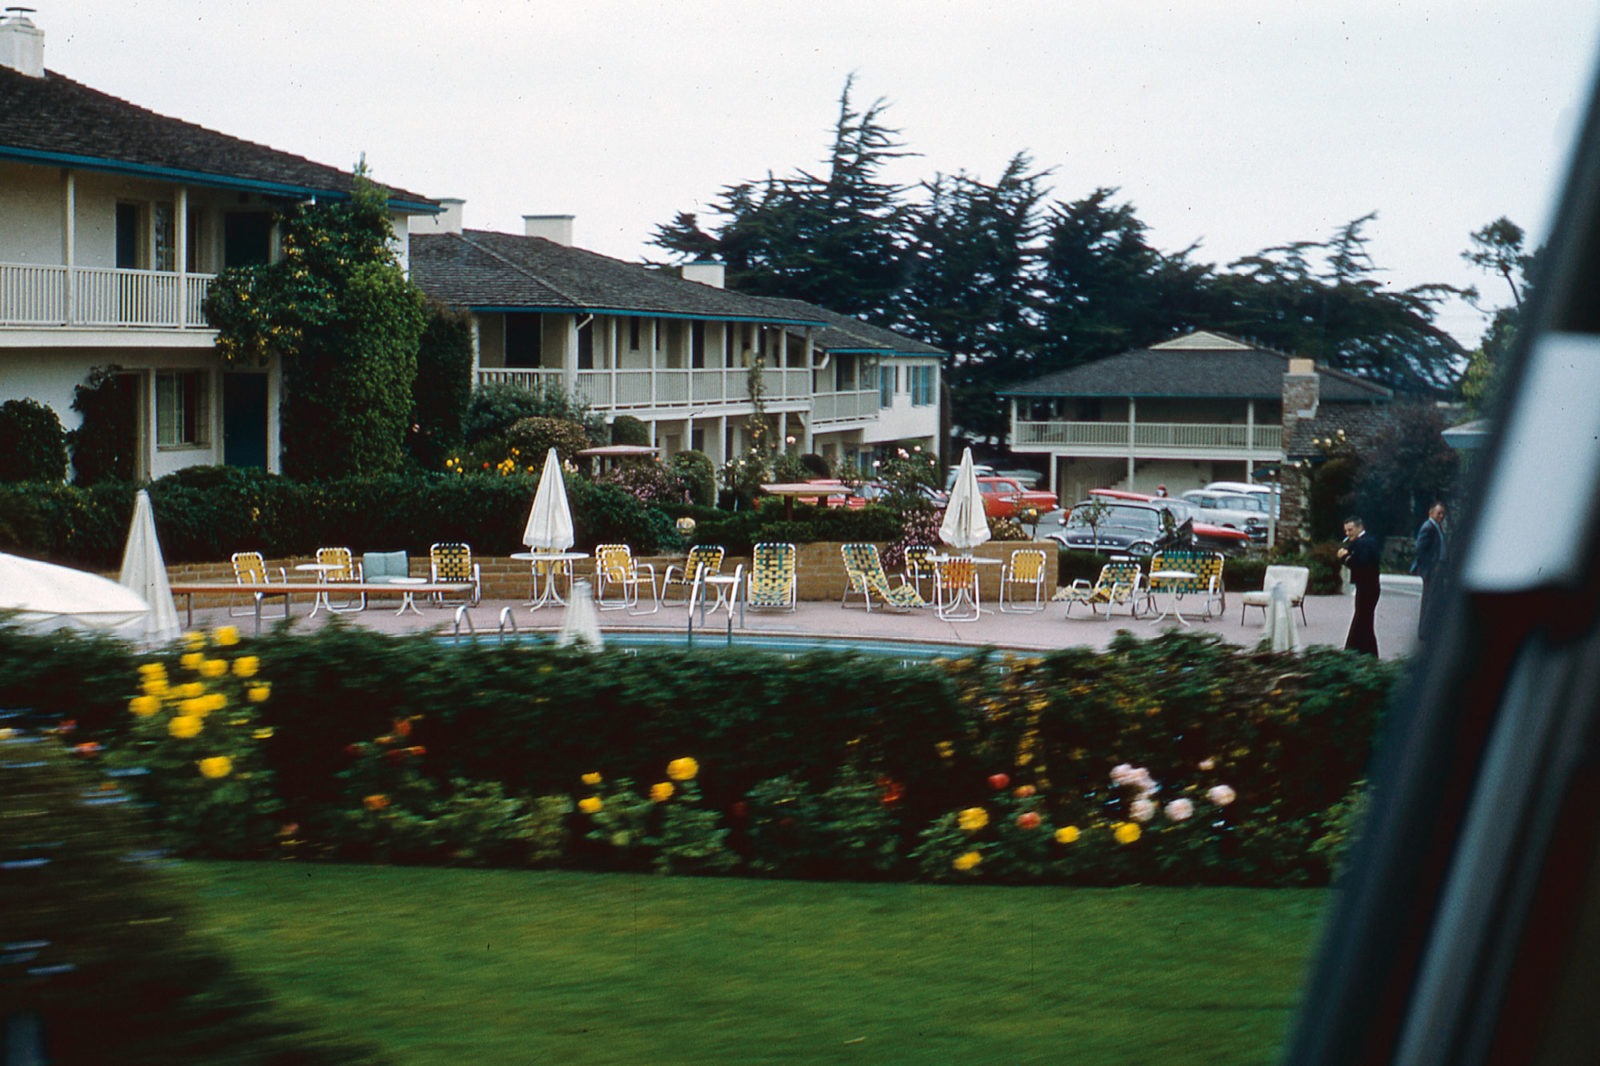 Ett motell med pool bakom lummiga buskar och gula blommor, fotograferat genom bilfönster.